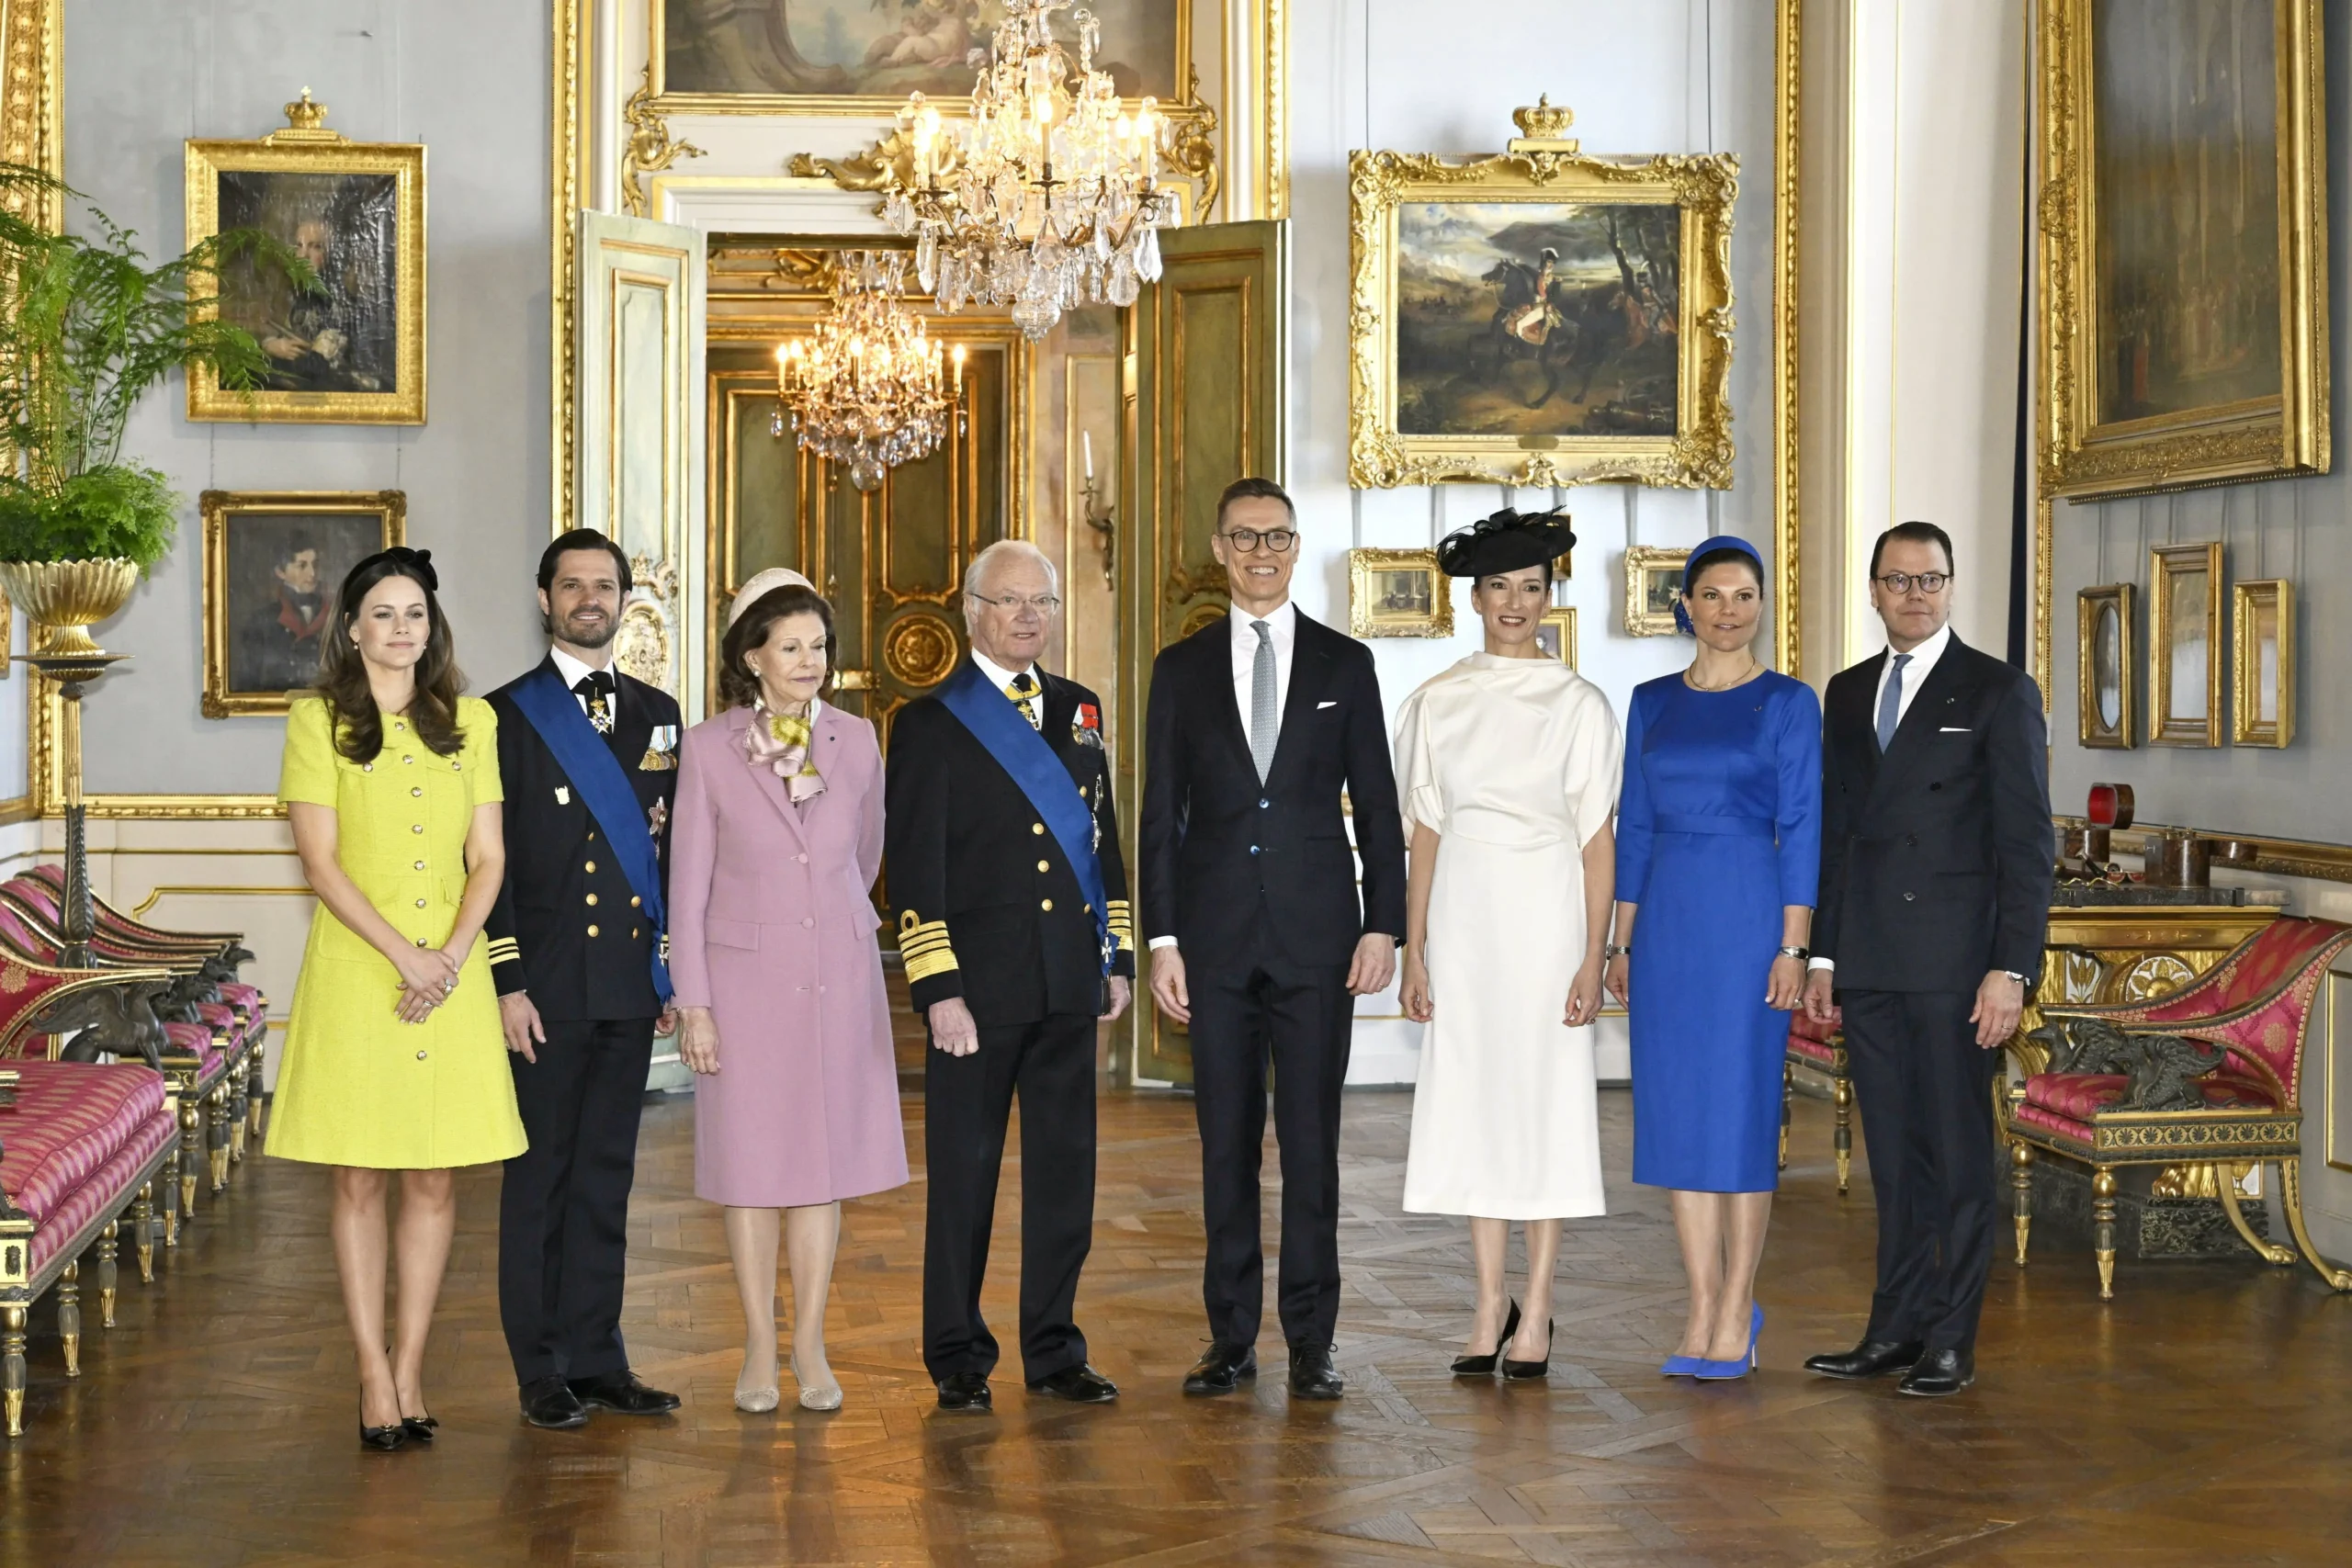 Die schwedischen Royals begrüßen den finnischen Präsidenten Alexander Stubb und seine Frau Suzanne Innes-Stubb im Schloss. 